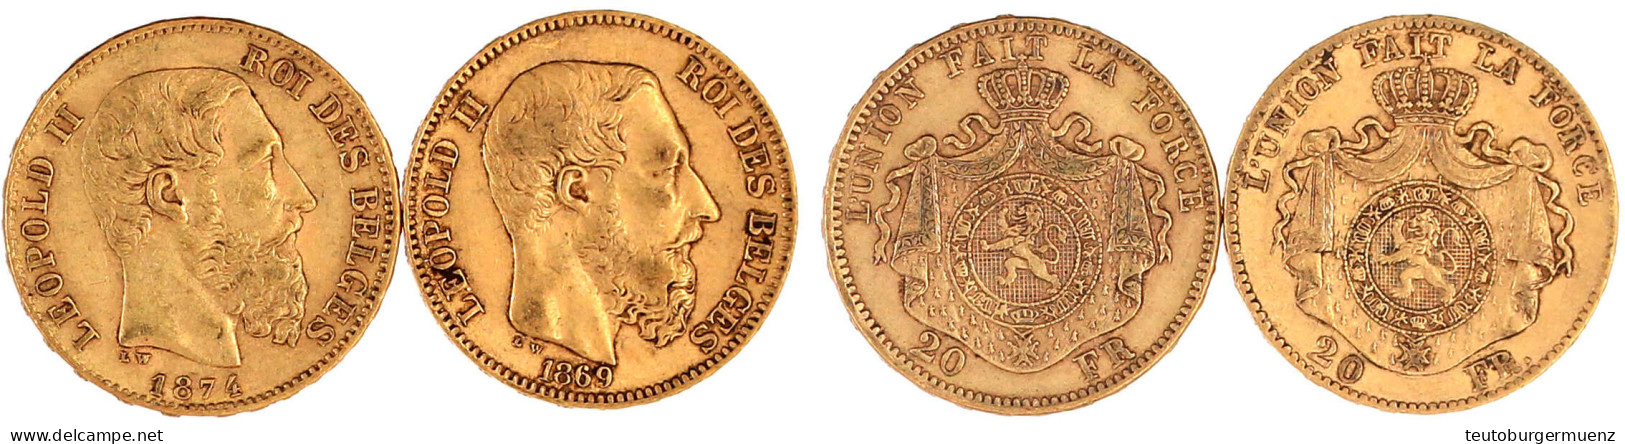 2 X 20 Francs: 1869 Und 1974. Je 6,45 G. 900/1000. Sehr Schön. Krause/Mishler 32. - 20 Frank (goud)